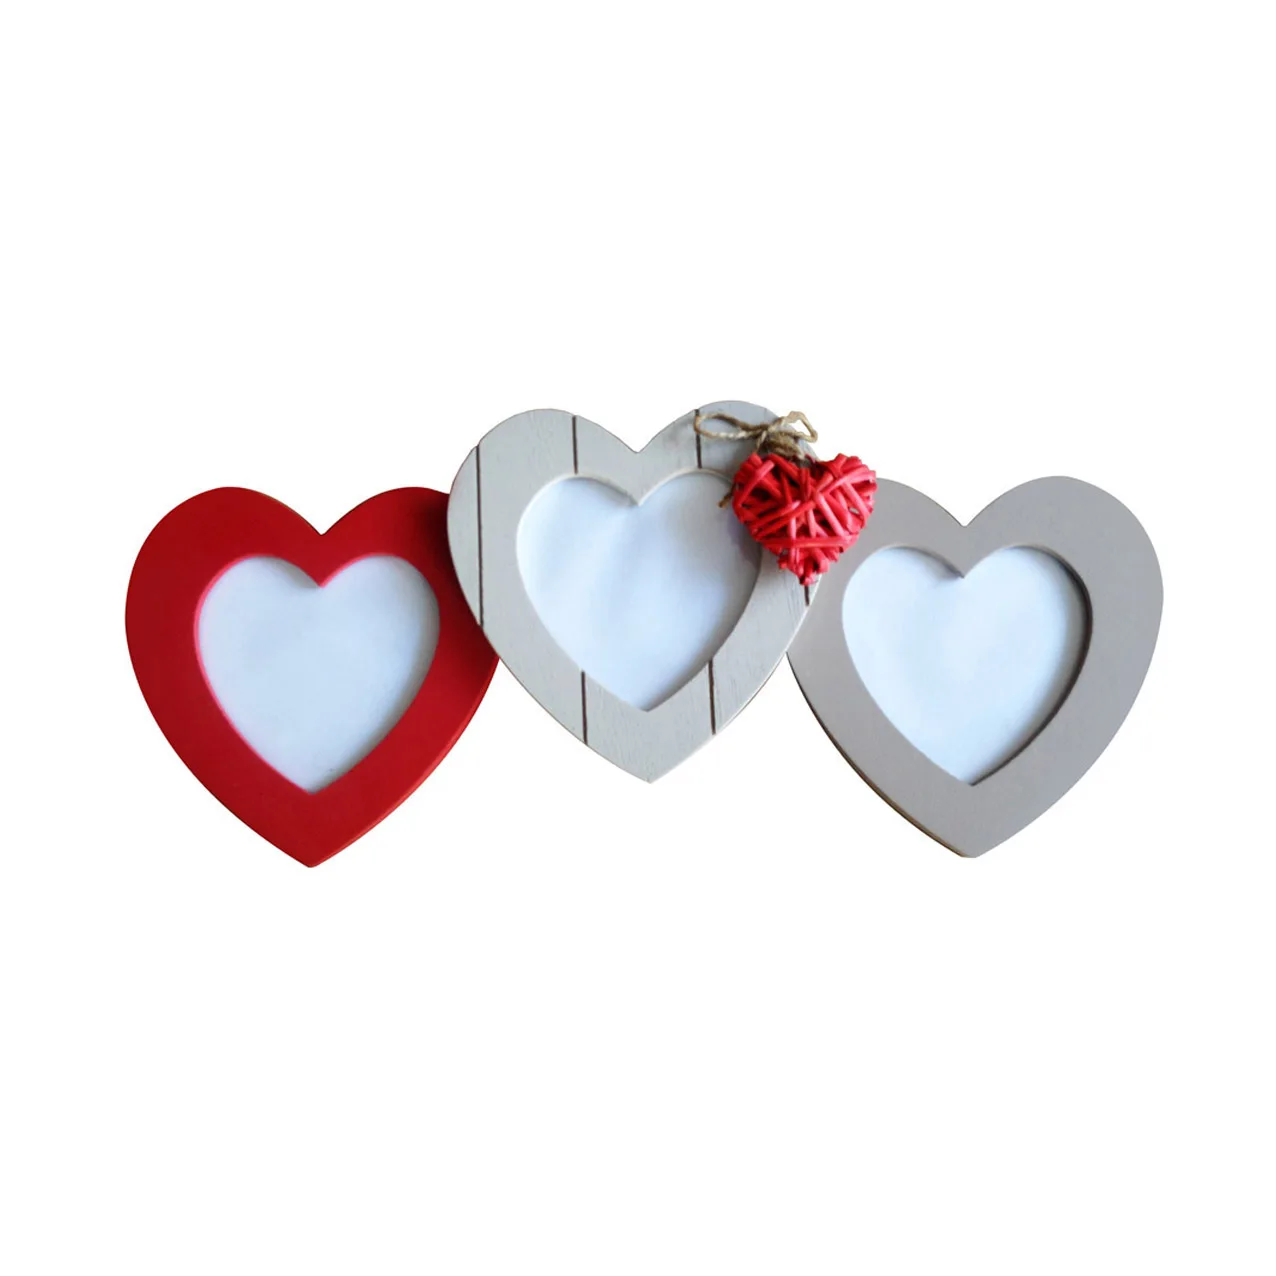 Khung ảnh bằng gỗ với thiết kế hình trái tim đỏ là một sự lựa chọn hoàn hảo để trang trí bức ảnh yêu thương của bạn. Với chất liệu gỗ tốt, hoa văn độc đáo kết hợp với hình trái tim đỏ sẽ tạo nên một không gian đầy tình yêu và ấm áp. Xem ngay hình ảnh để cảm nhận sự độc đáo và tinh tế của khung ảnh này nhé!